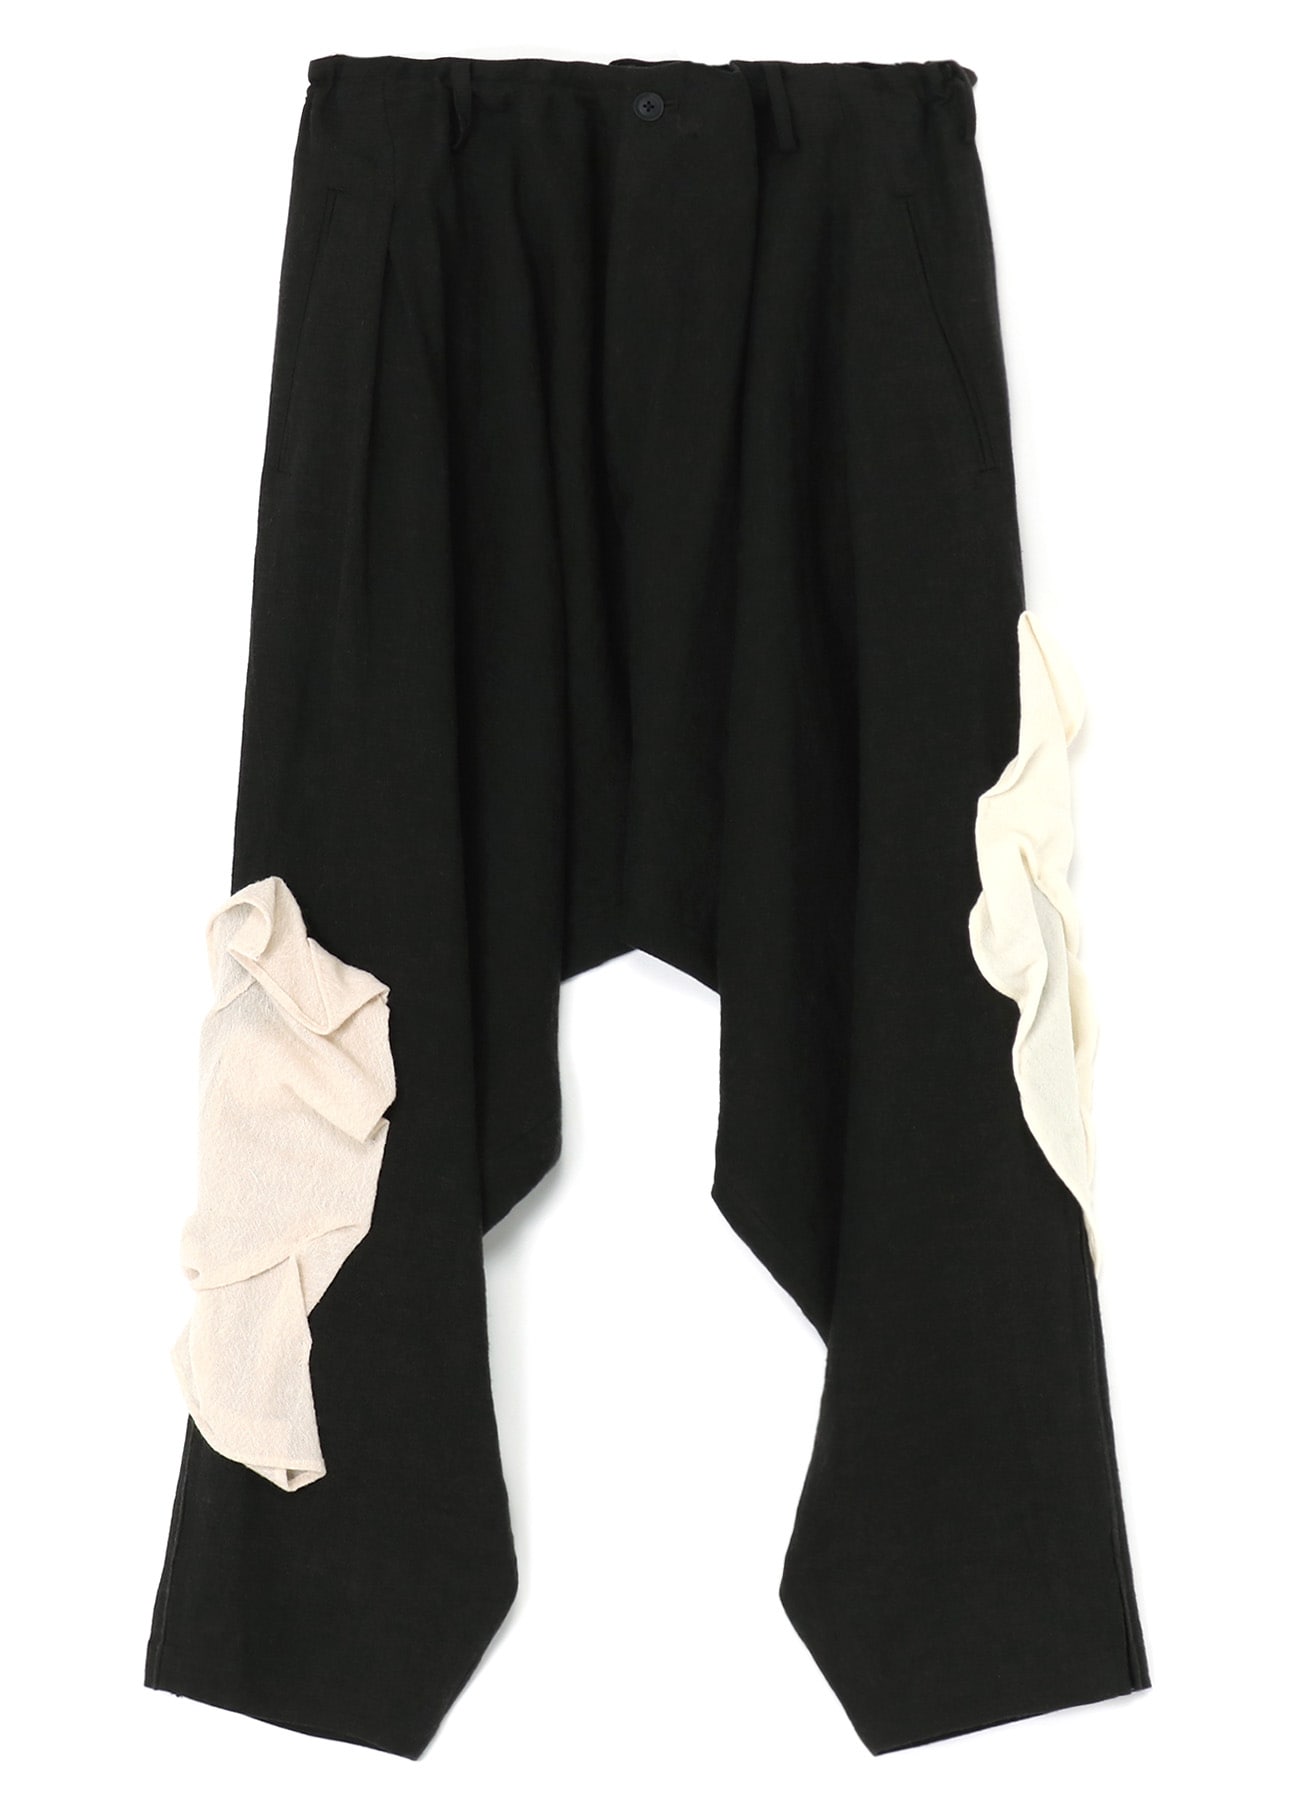 121cmFLAX WOOL CLOTH DRAPED PANTS - サルエルパンツ